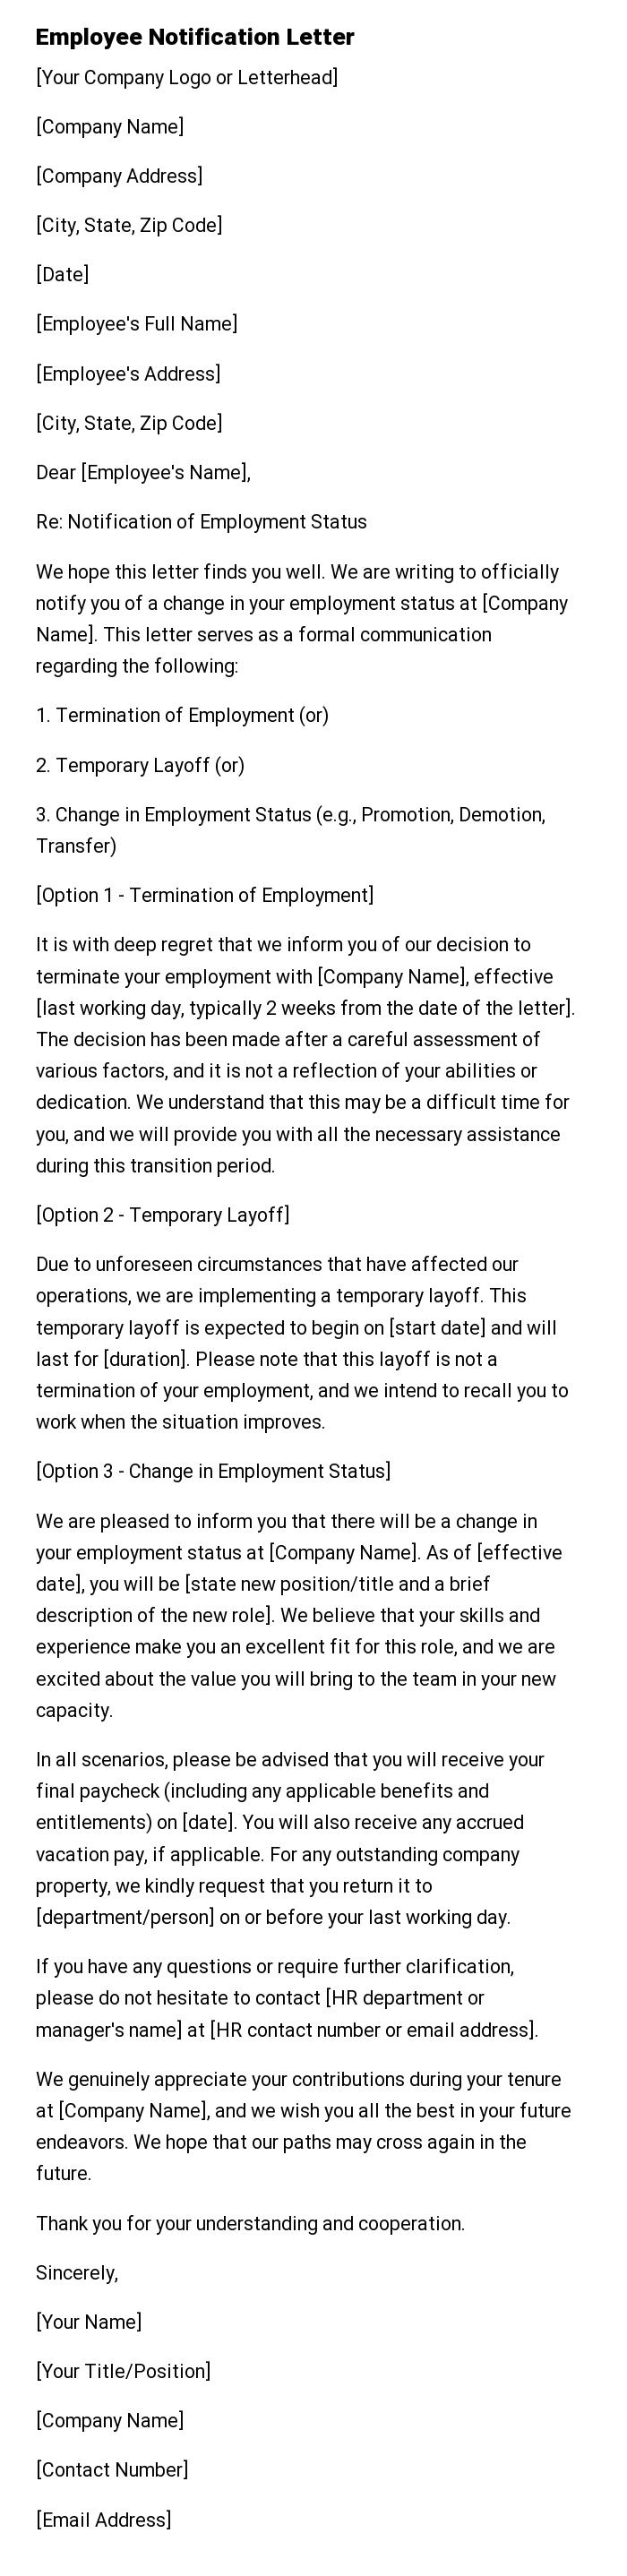 Employee Notification Letter